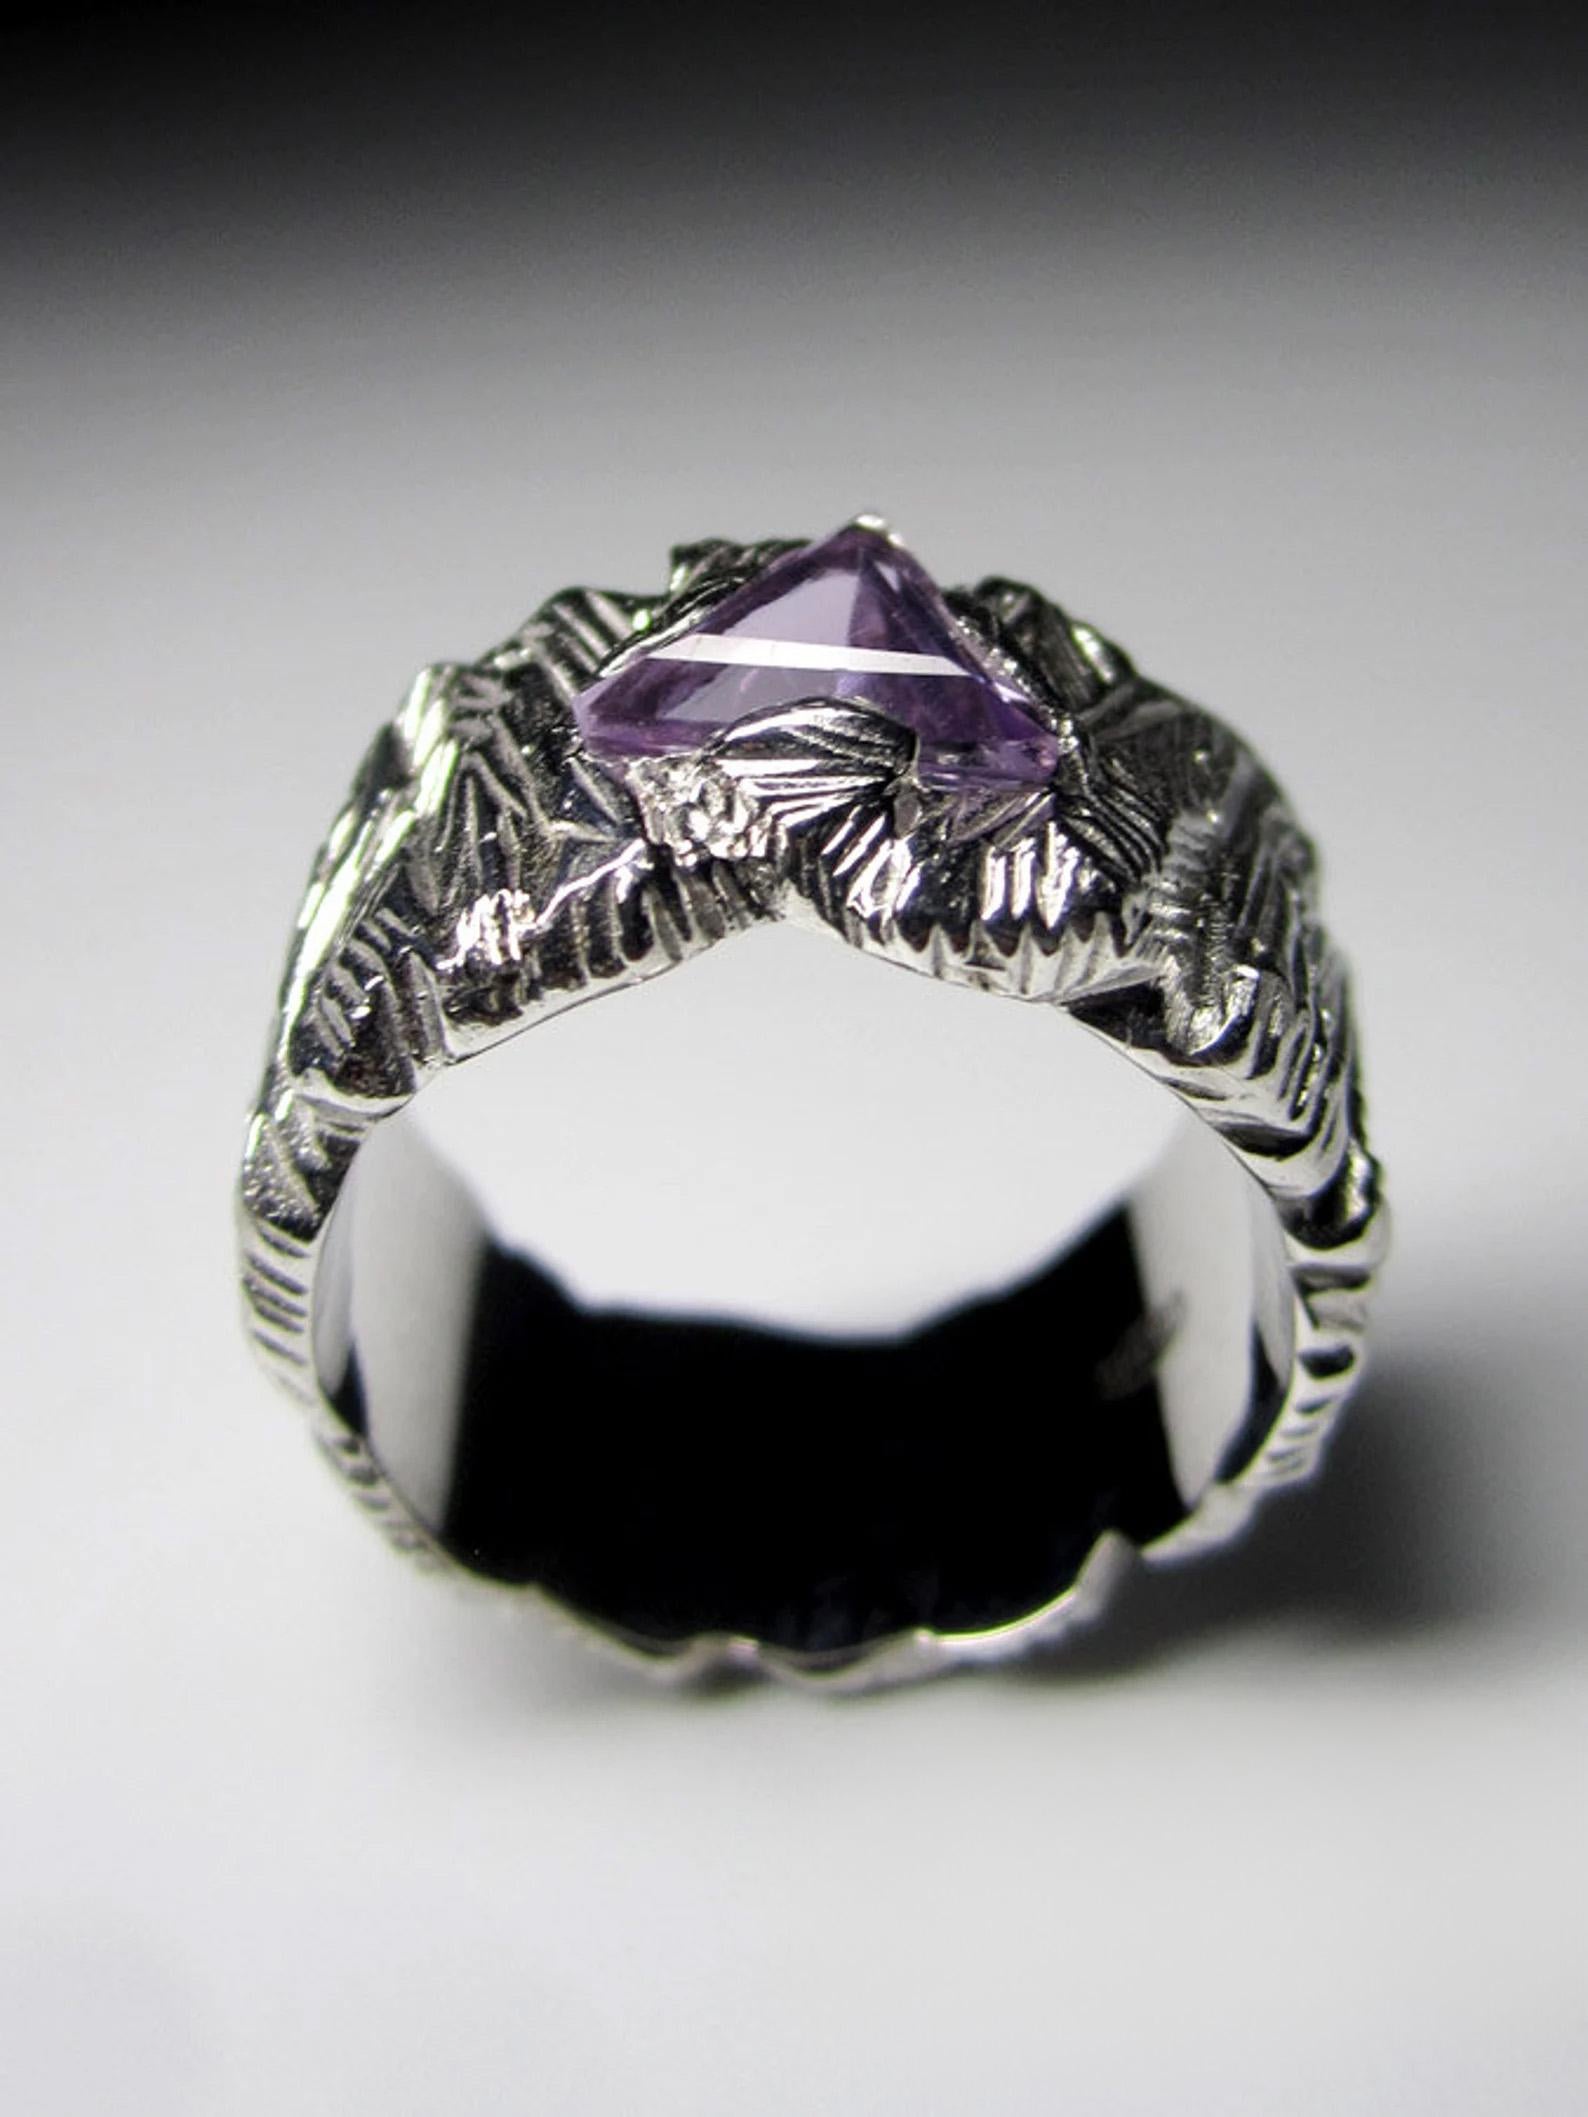 Big Amethyst Silver Ring Trilliant Fancy Cut Jewels Purple Violet Gemstone  2